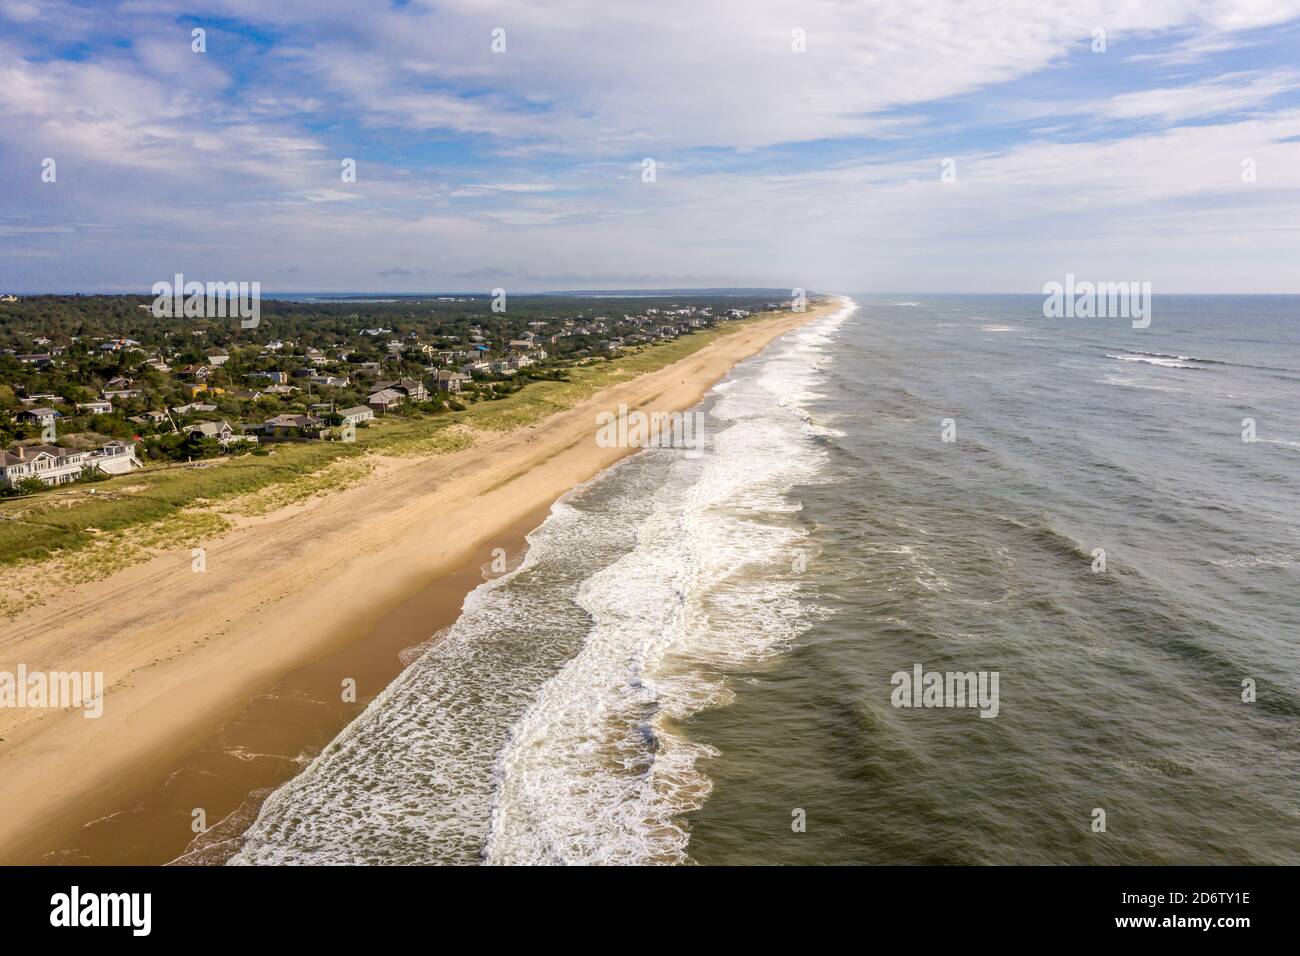 Immagine aerea della spiaggia di Amagansett e dell'Oceano Atlantico Foto Stock